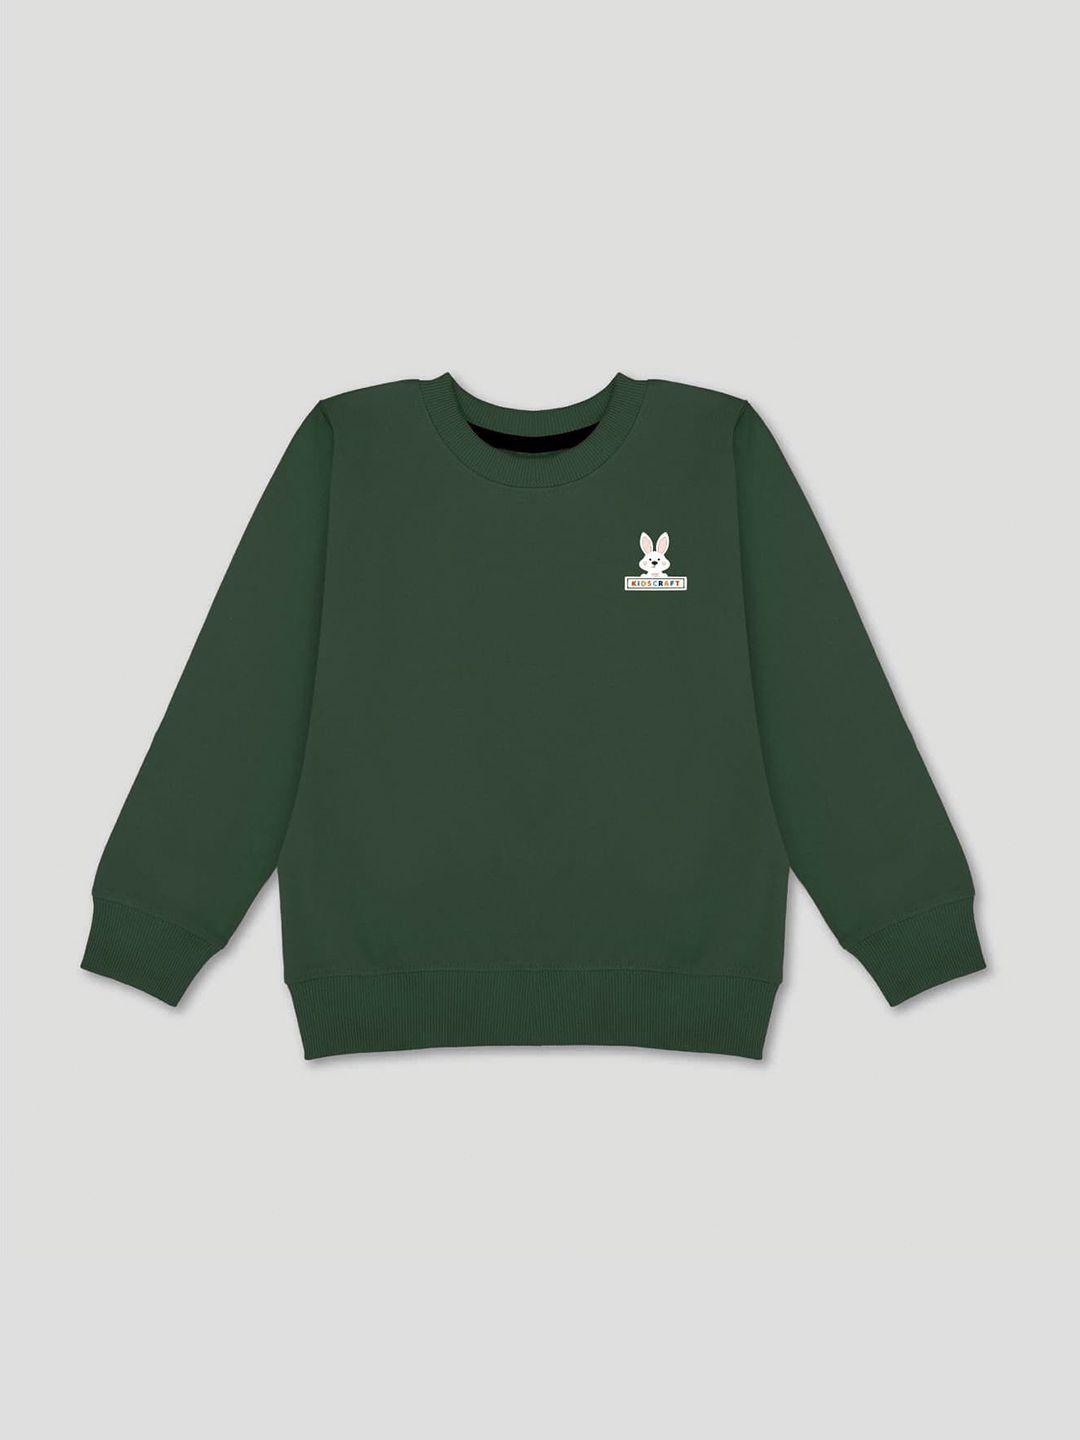 kidscraft-boys-green-sweatshirt